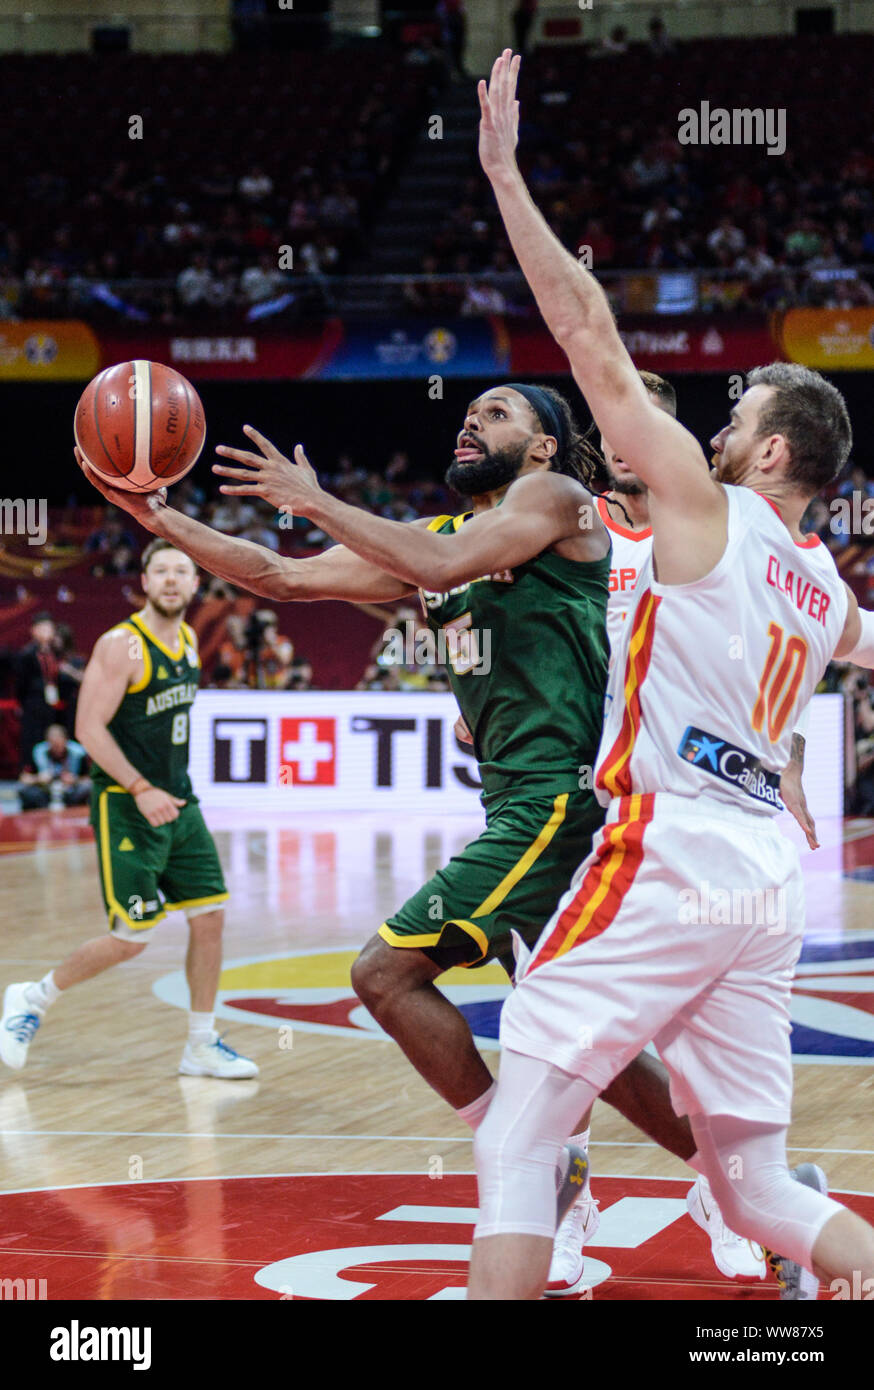 Patty Mühlen (Australien) gegen Spanien. FIBA Basketball Wm China 2019, Halbfinale Stockfoto